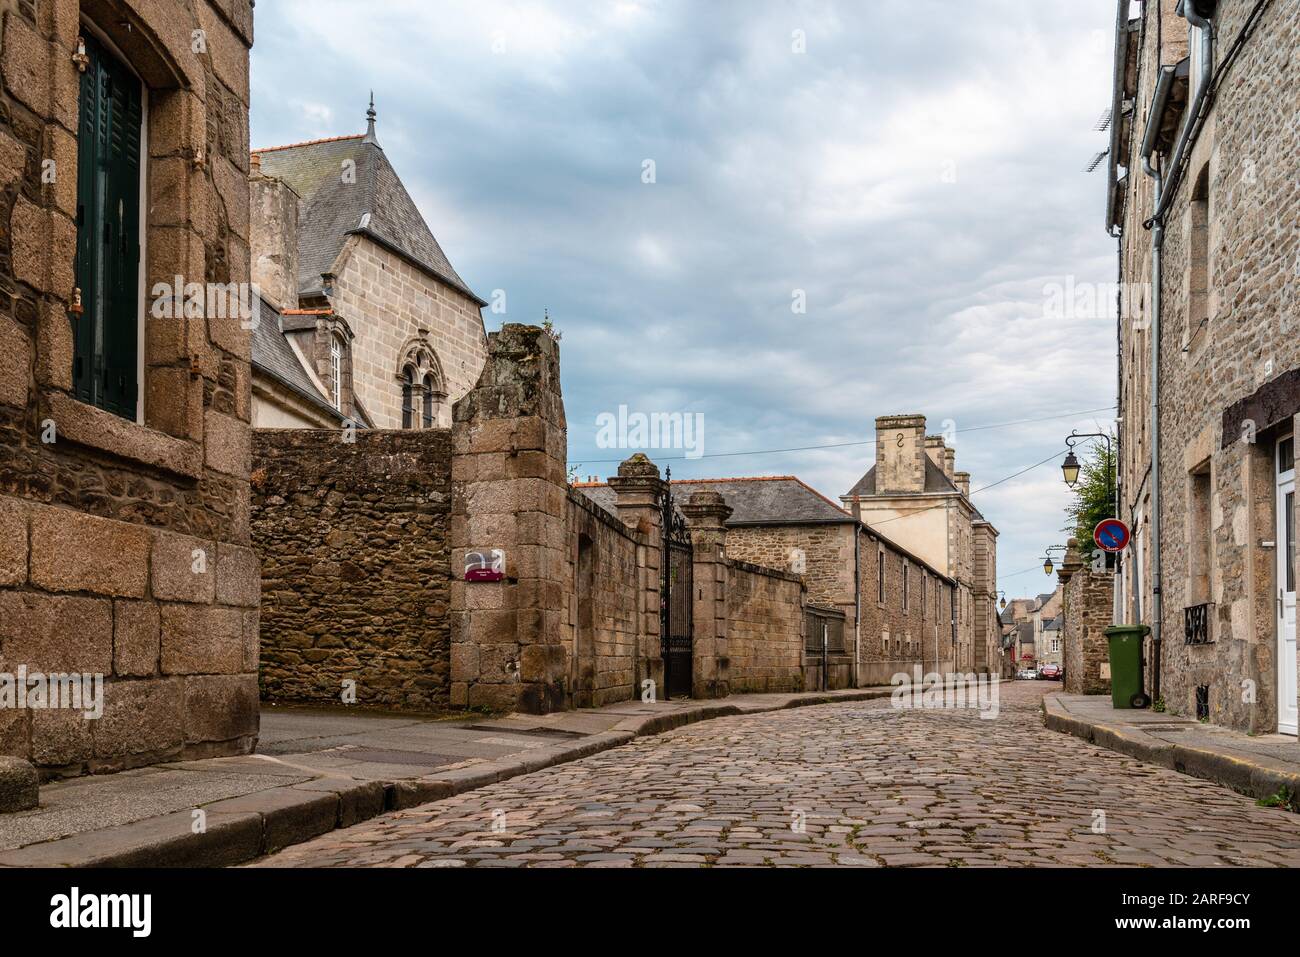 Ancienne rue pavée avec maisons médiévales en pierre dans le centre-ville de Dinan, Bretagne française. Banque D'Images